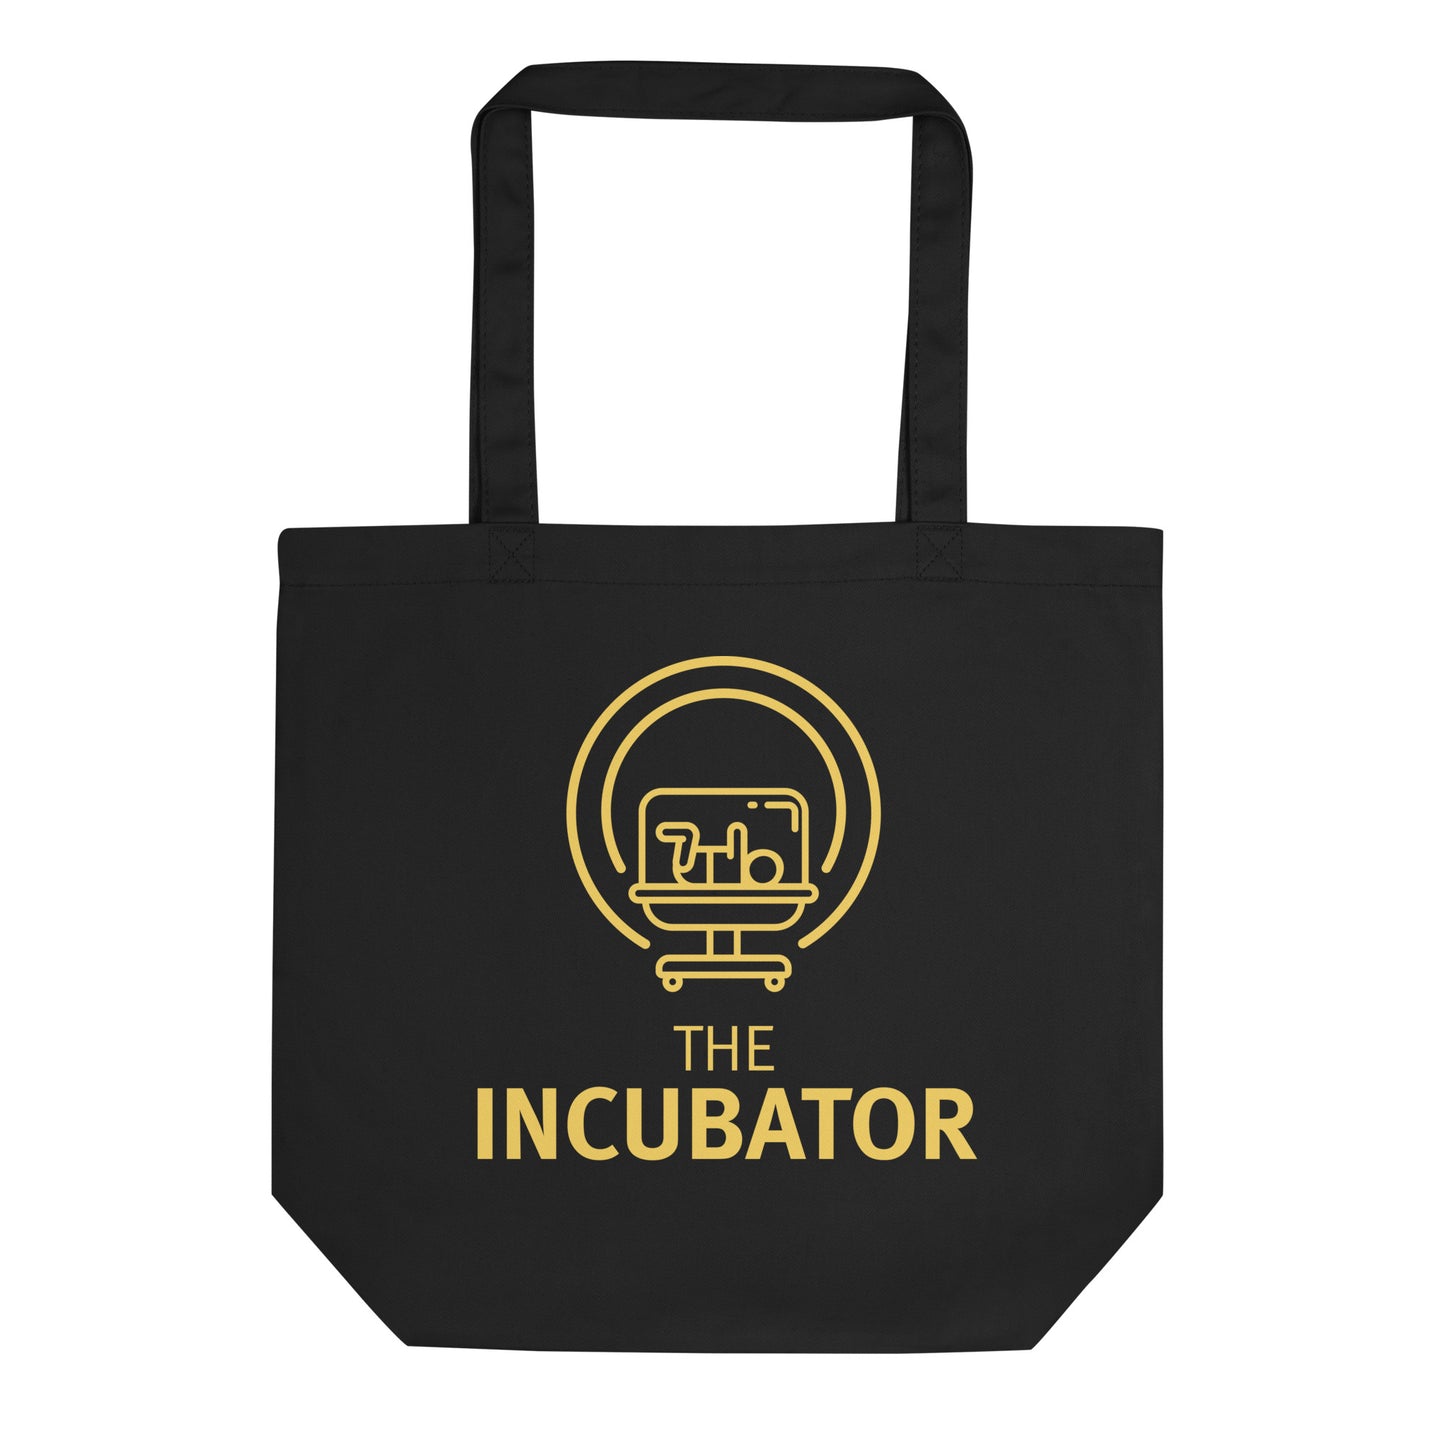 The incubator tote bag